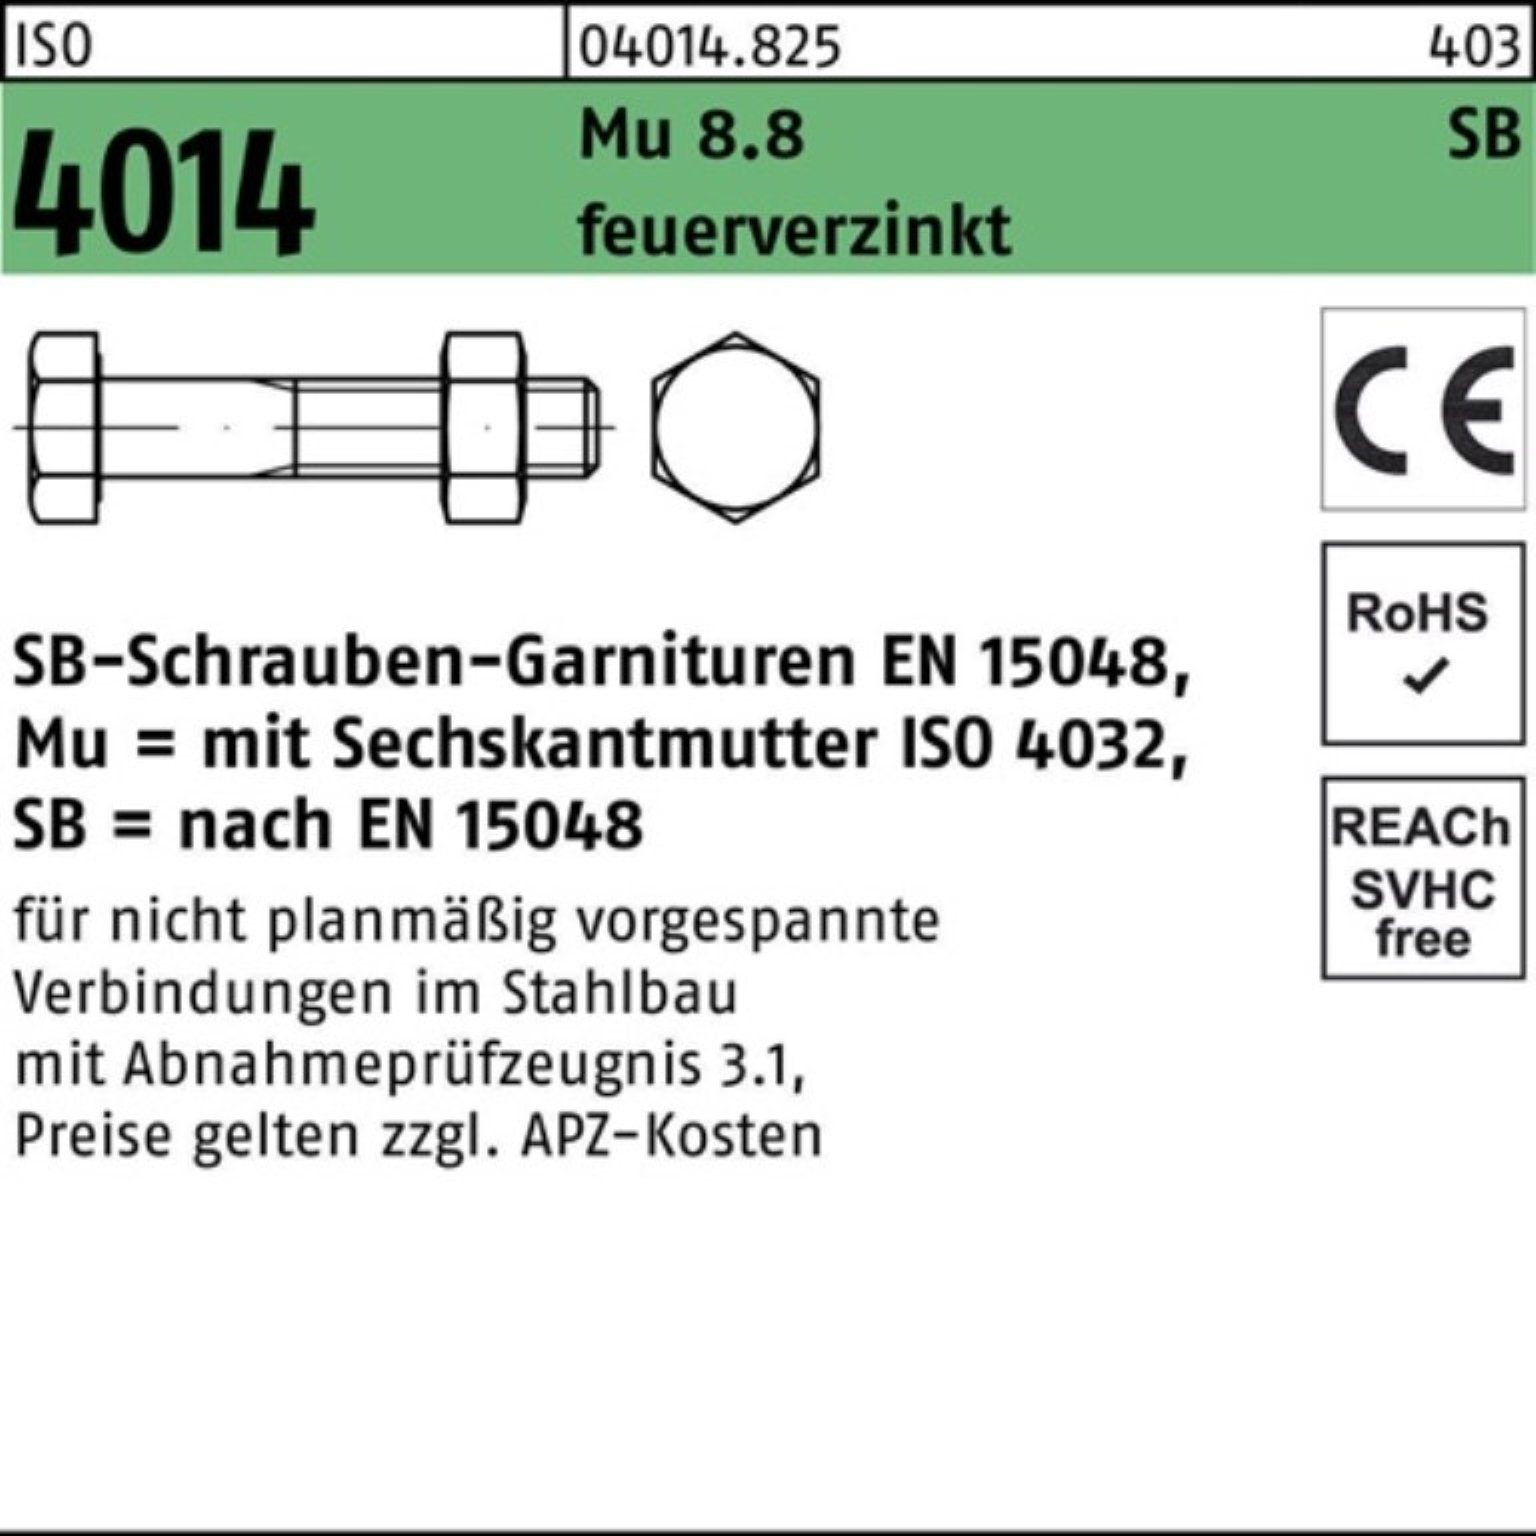 4014 M36x Bufab 8.8 Sechskantschraube Sechskantschraube 160 Schaft/Mutter 100er Pack ISO feuer